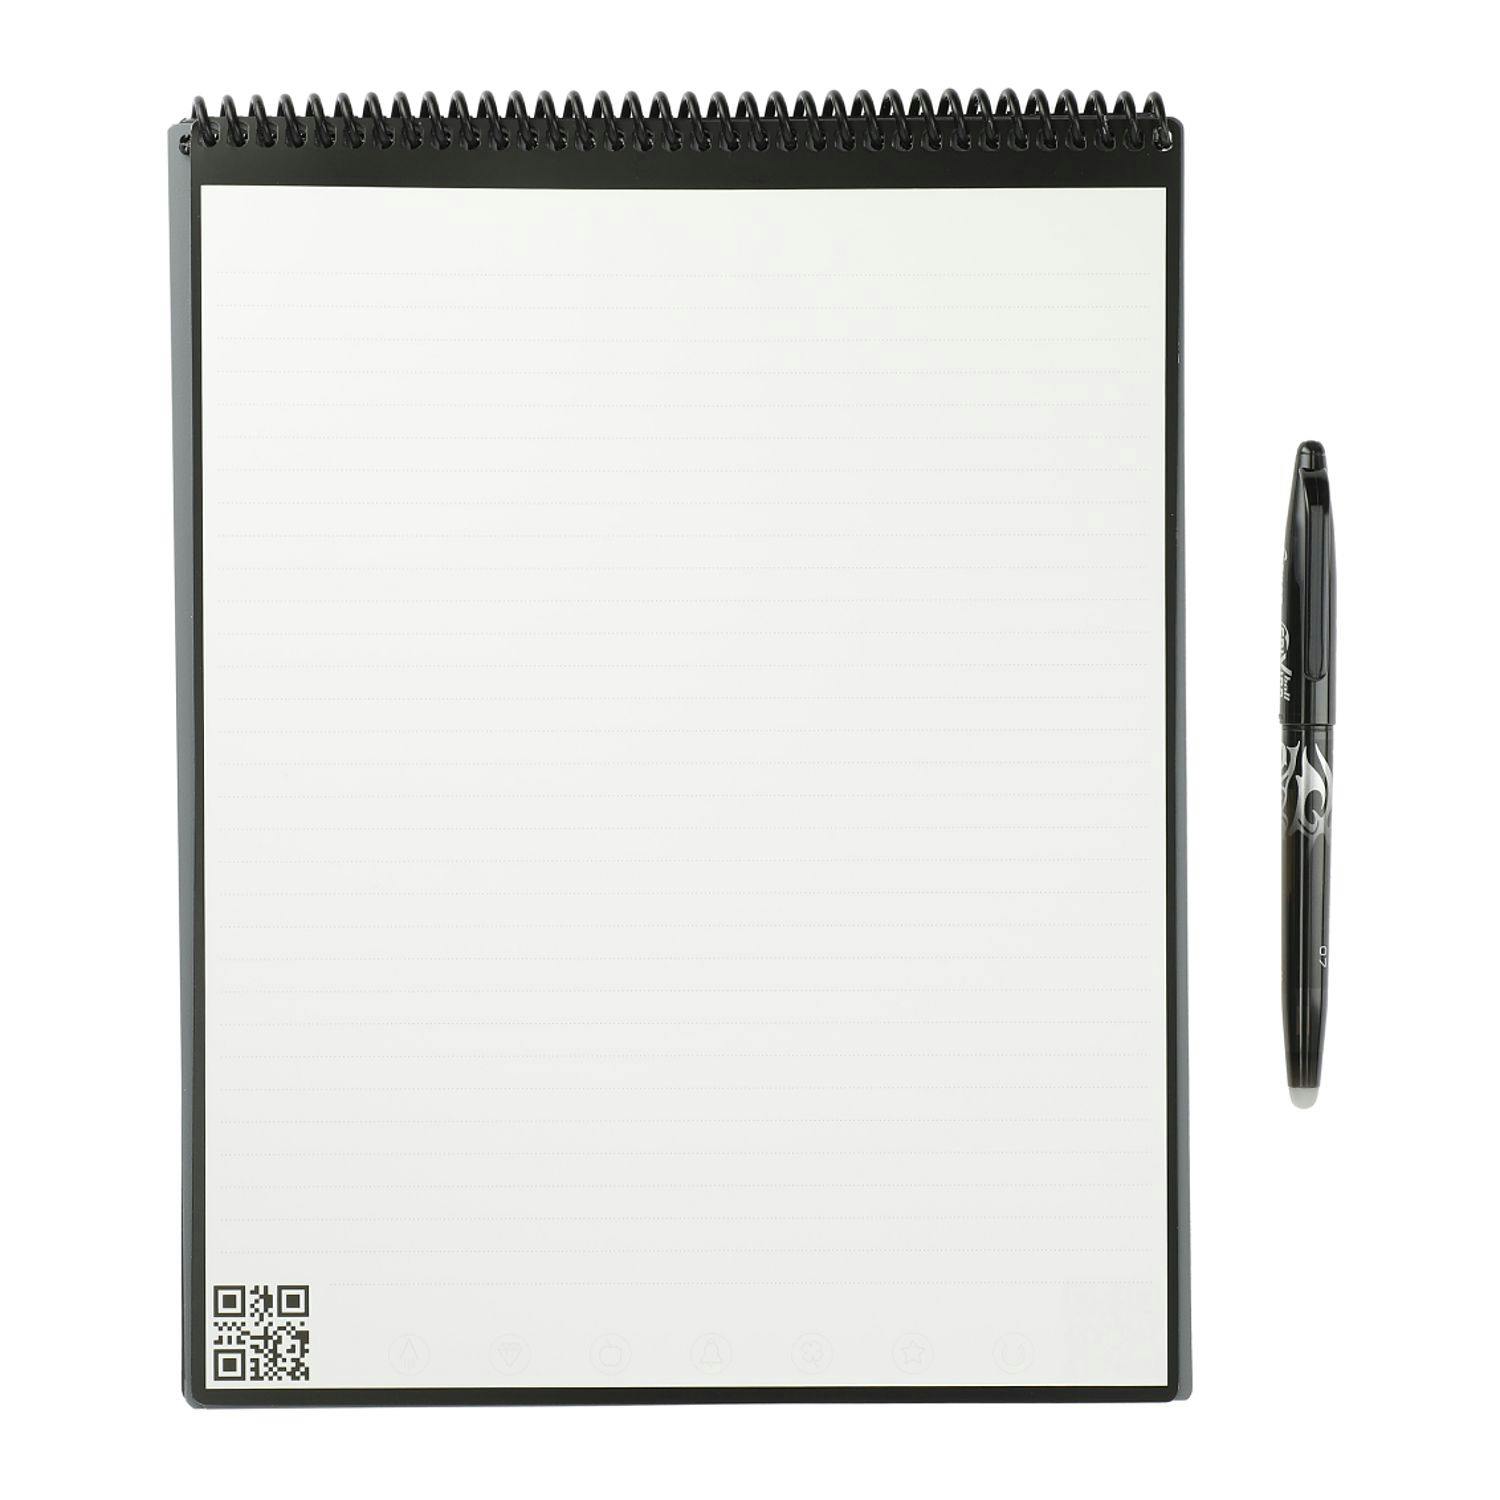 Rocketbook Letter Flip Notebook Set - additional Image 1